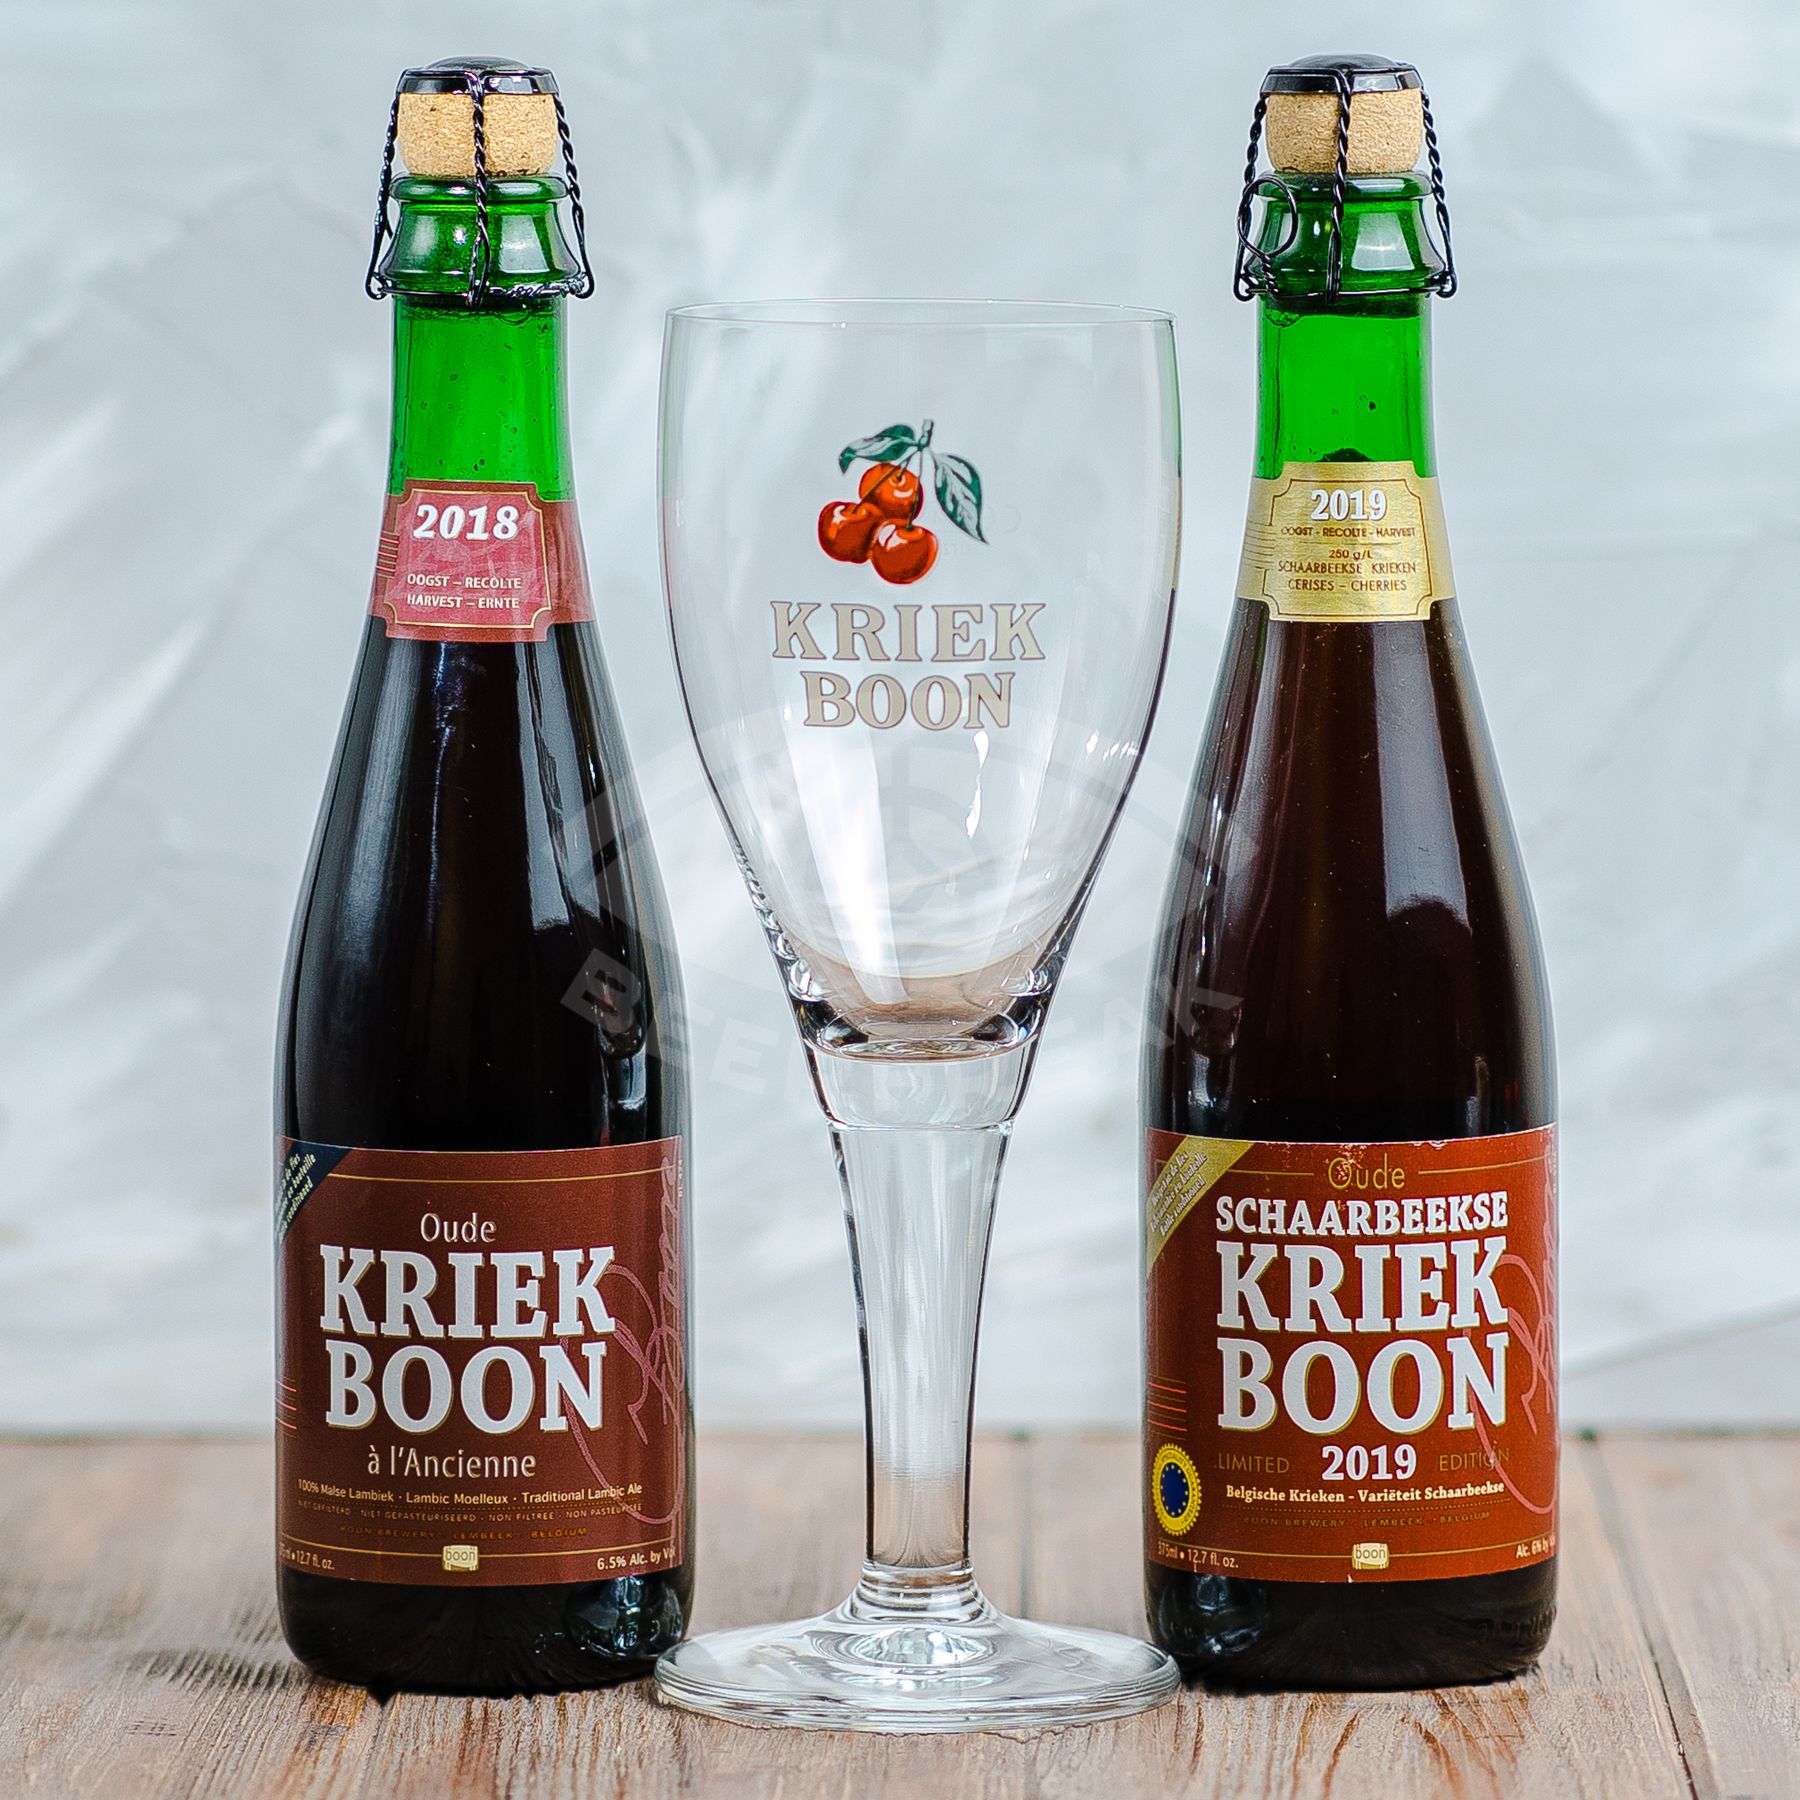 60 бун в рублях. Kriek Boon пиво. Kriek Boon Бельгия. Вишнёвое Kriek Boon. Kriek Boon logo.